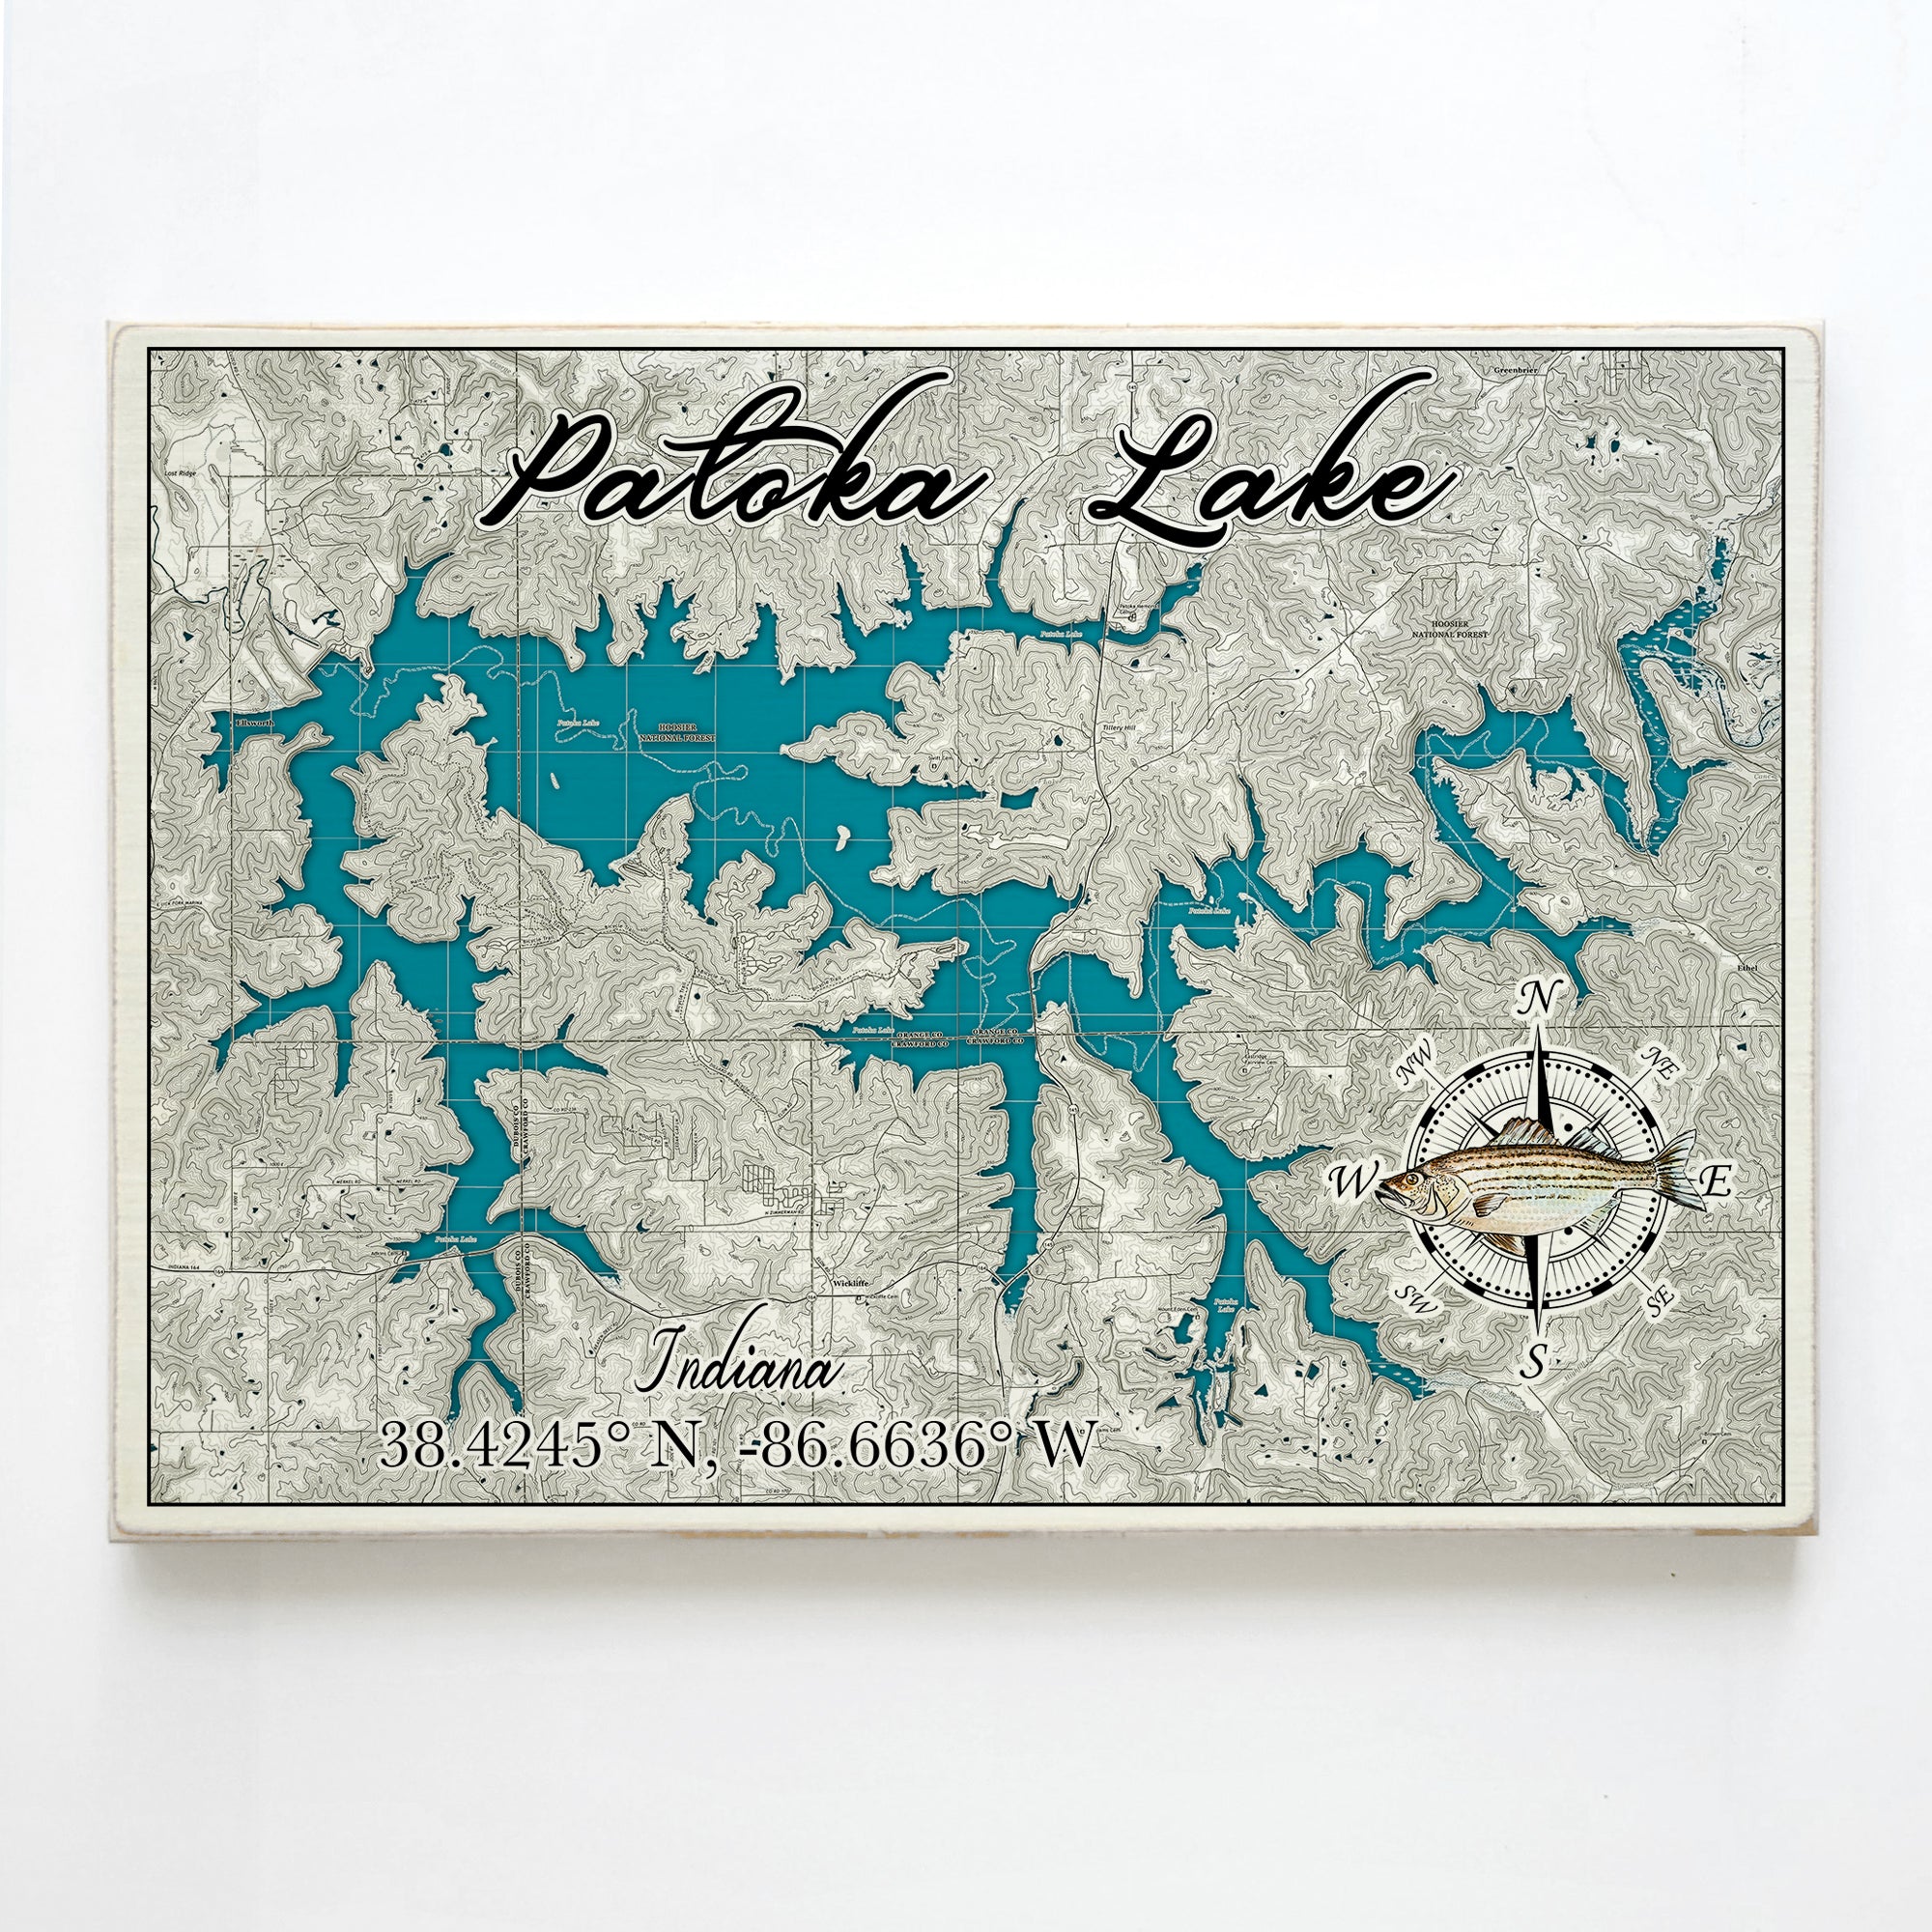 Patoka Lake, IN Plank Map